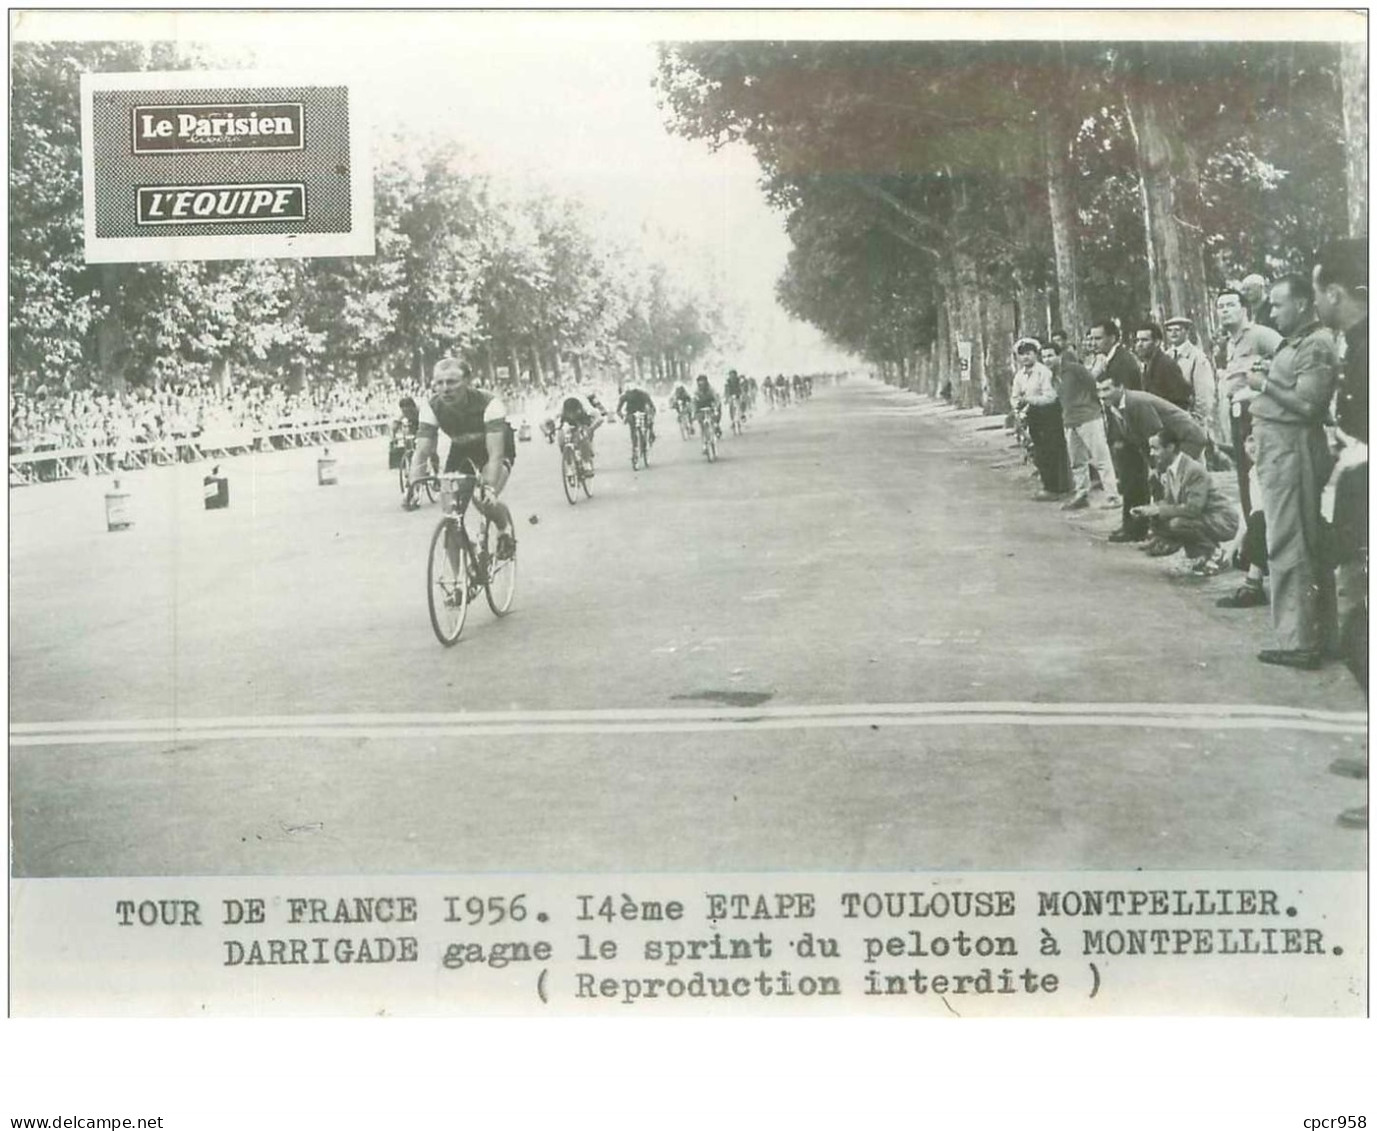 PHOTO DE PRESSE ORIGINALE TOUR DE FRANCE 1956.20X15.14eme ETAPE TOULOUSE MONTPELLIER.DARRIGADE GAGNE LE SPRINT.n°18679 - Radsport